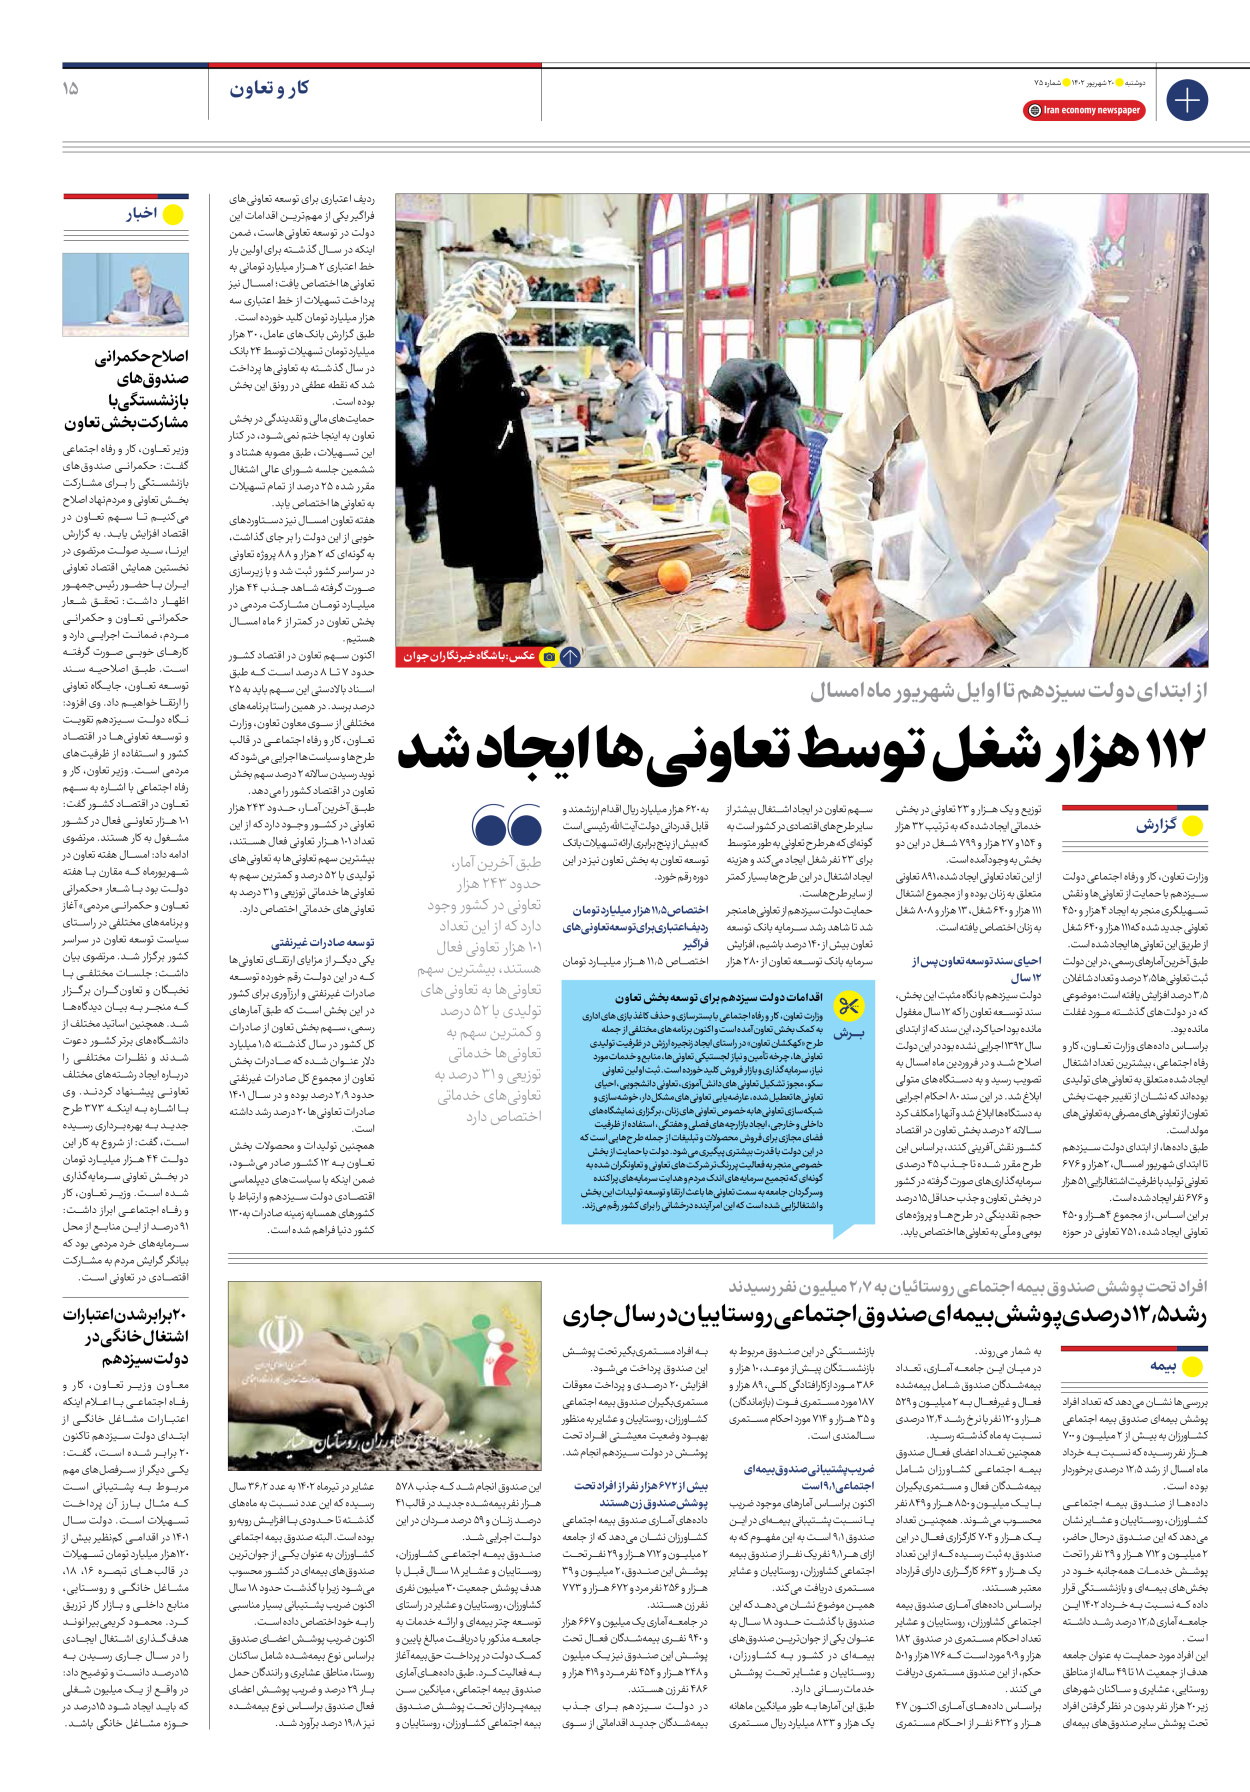 روزنامه ایران اقتصادی - شماره هفتاد و پنج - ۲۰ شهریور ۱۴۰۲ - صفحه ۱۵